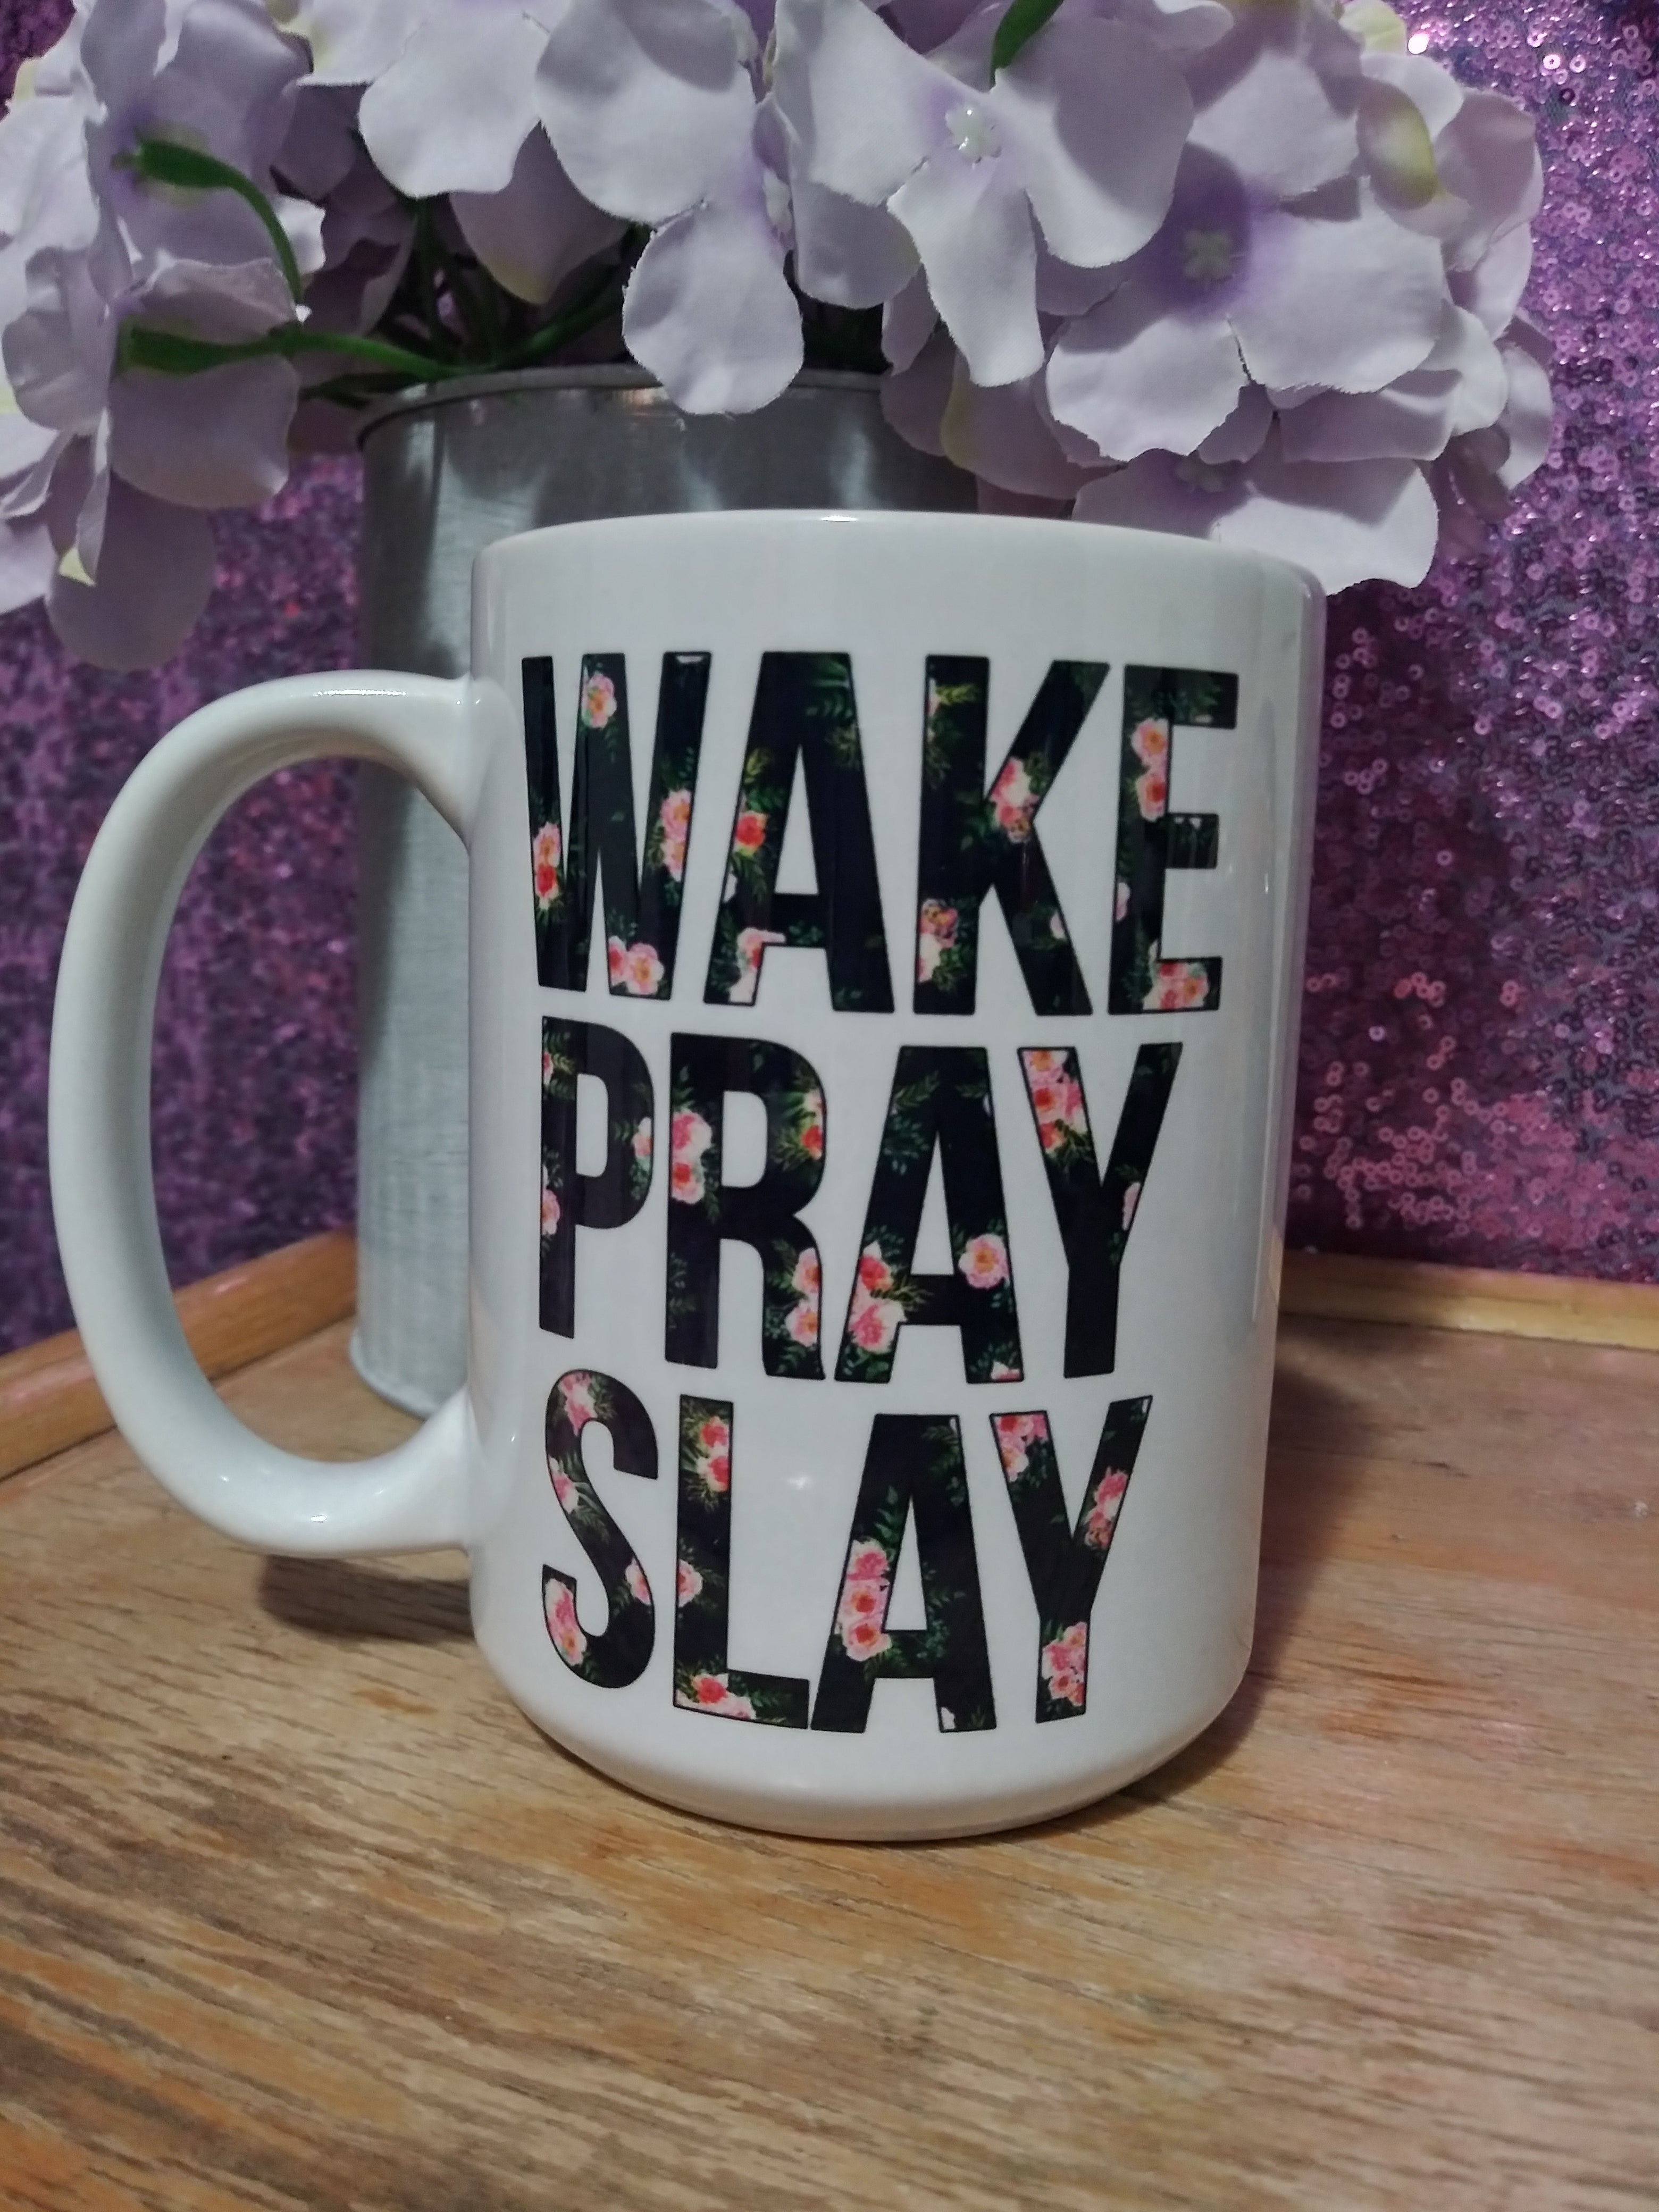 Wake pray slay mug